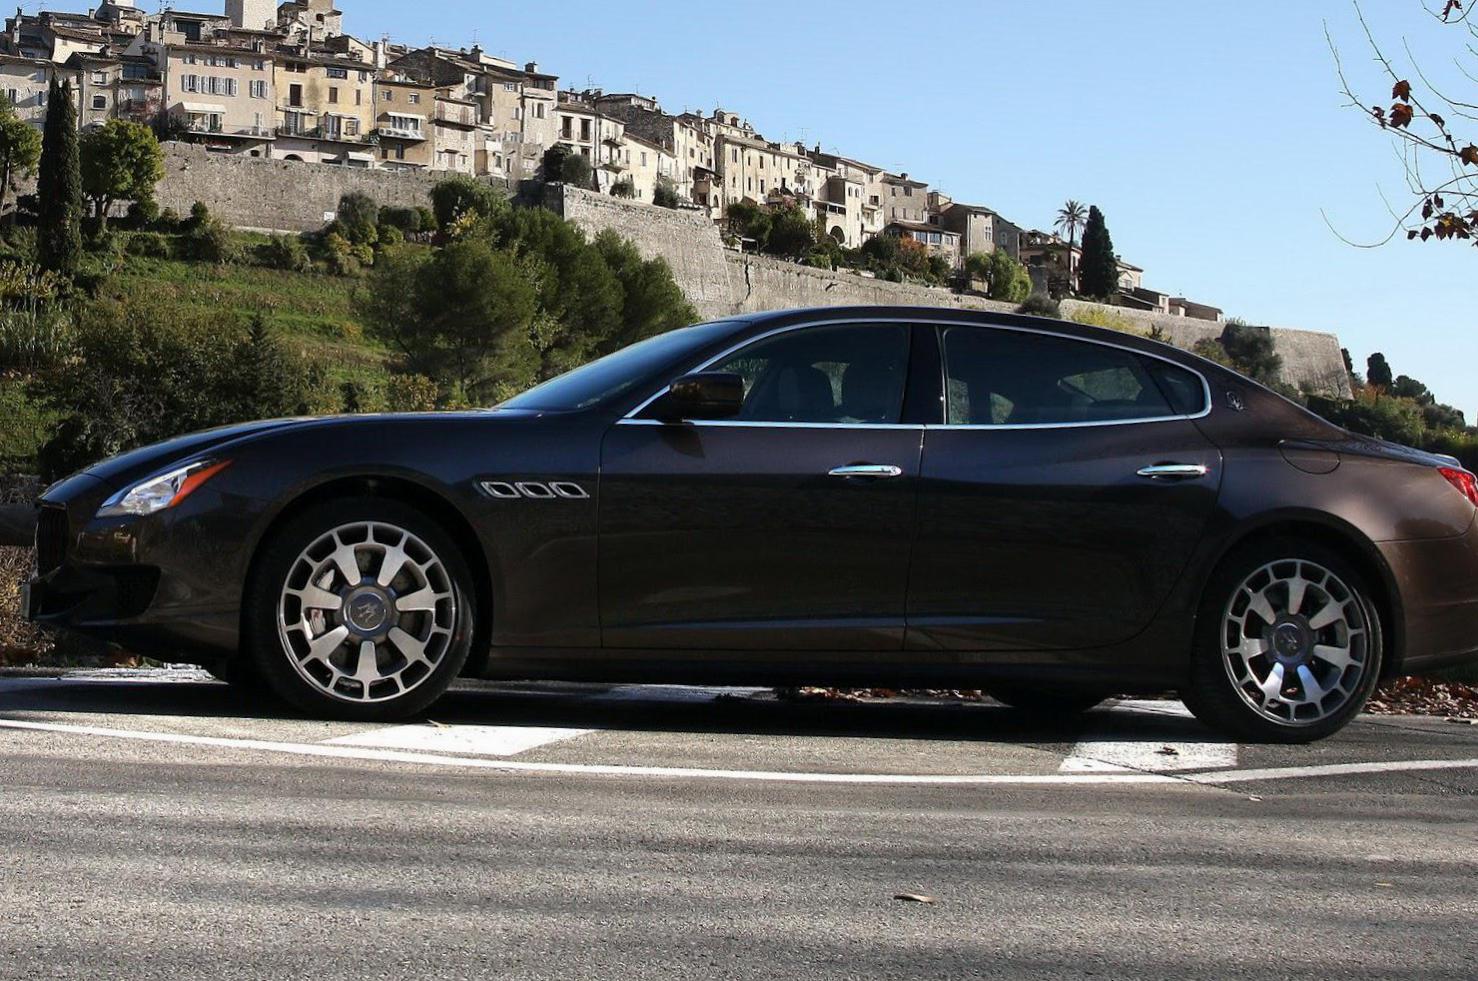 Quattroporte Maserati price 2015